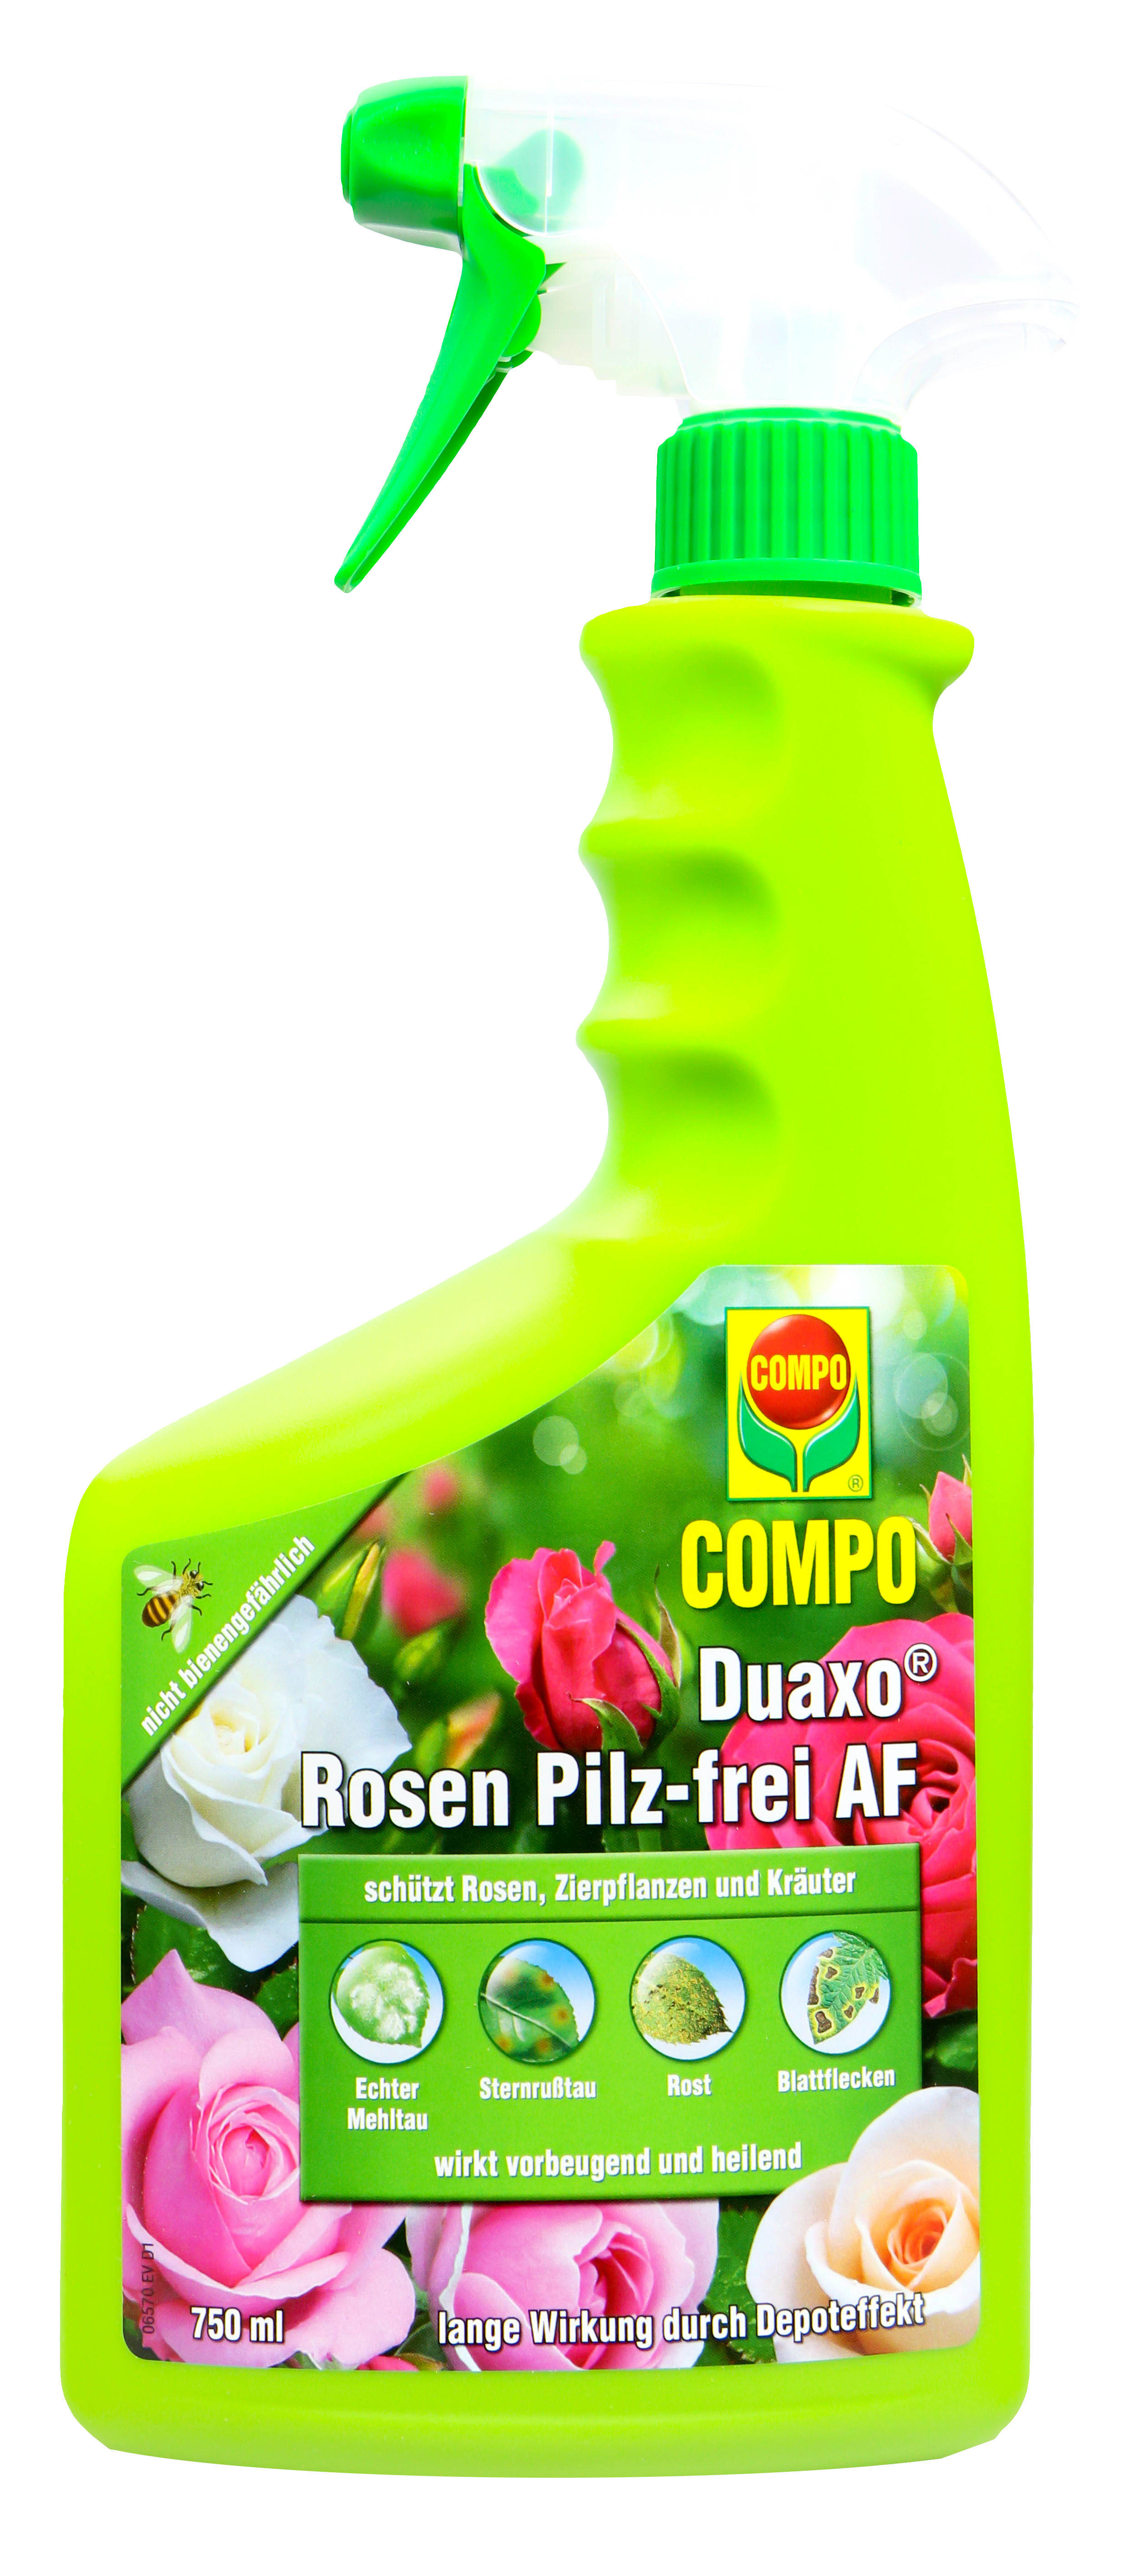 Compo Duaxo Rosen Pilz-frei AF - 0,75 l